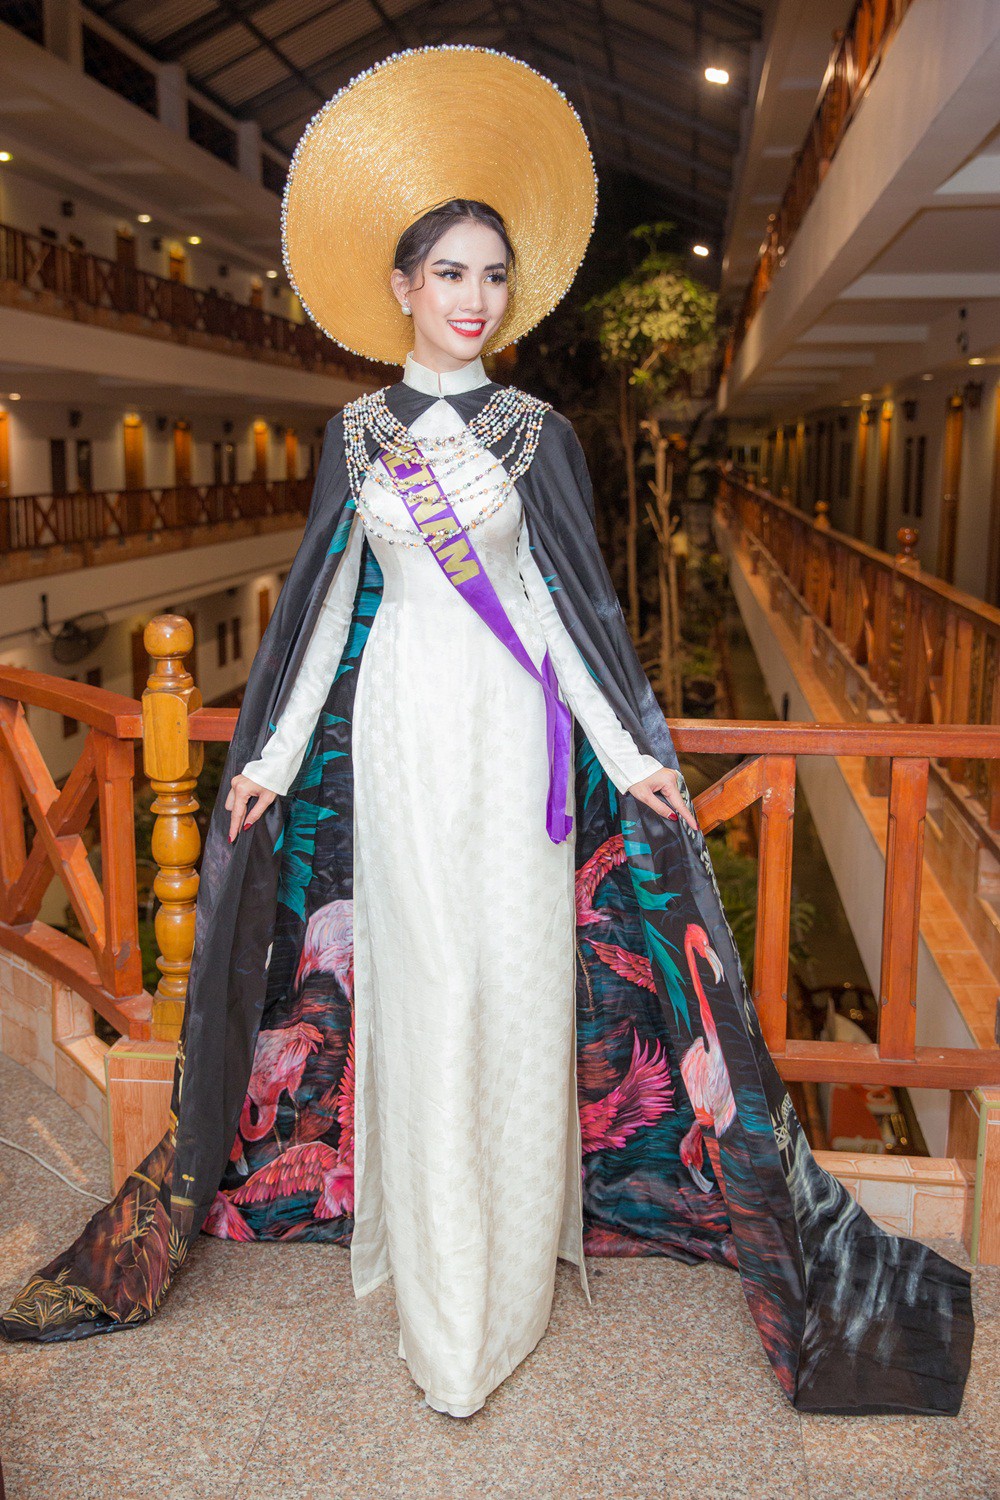 Phan Thi Mơ lọt top 10 phần thi trang phục của Hoa hậu Đại sứ Du lịch Thế giới 2018 - Ảnh 3.